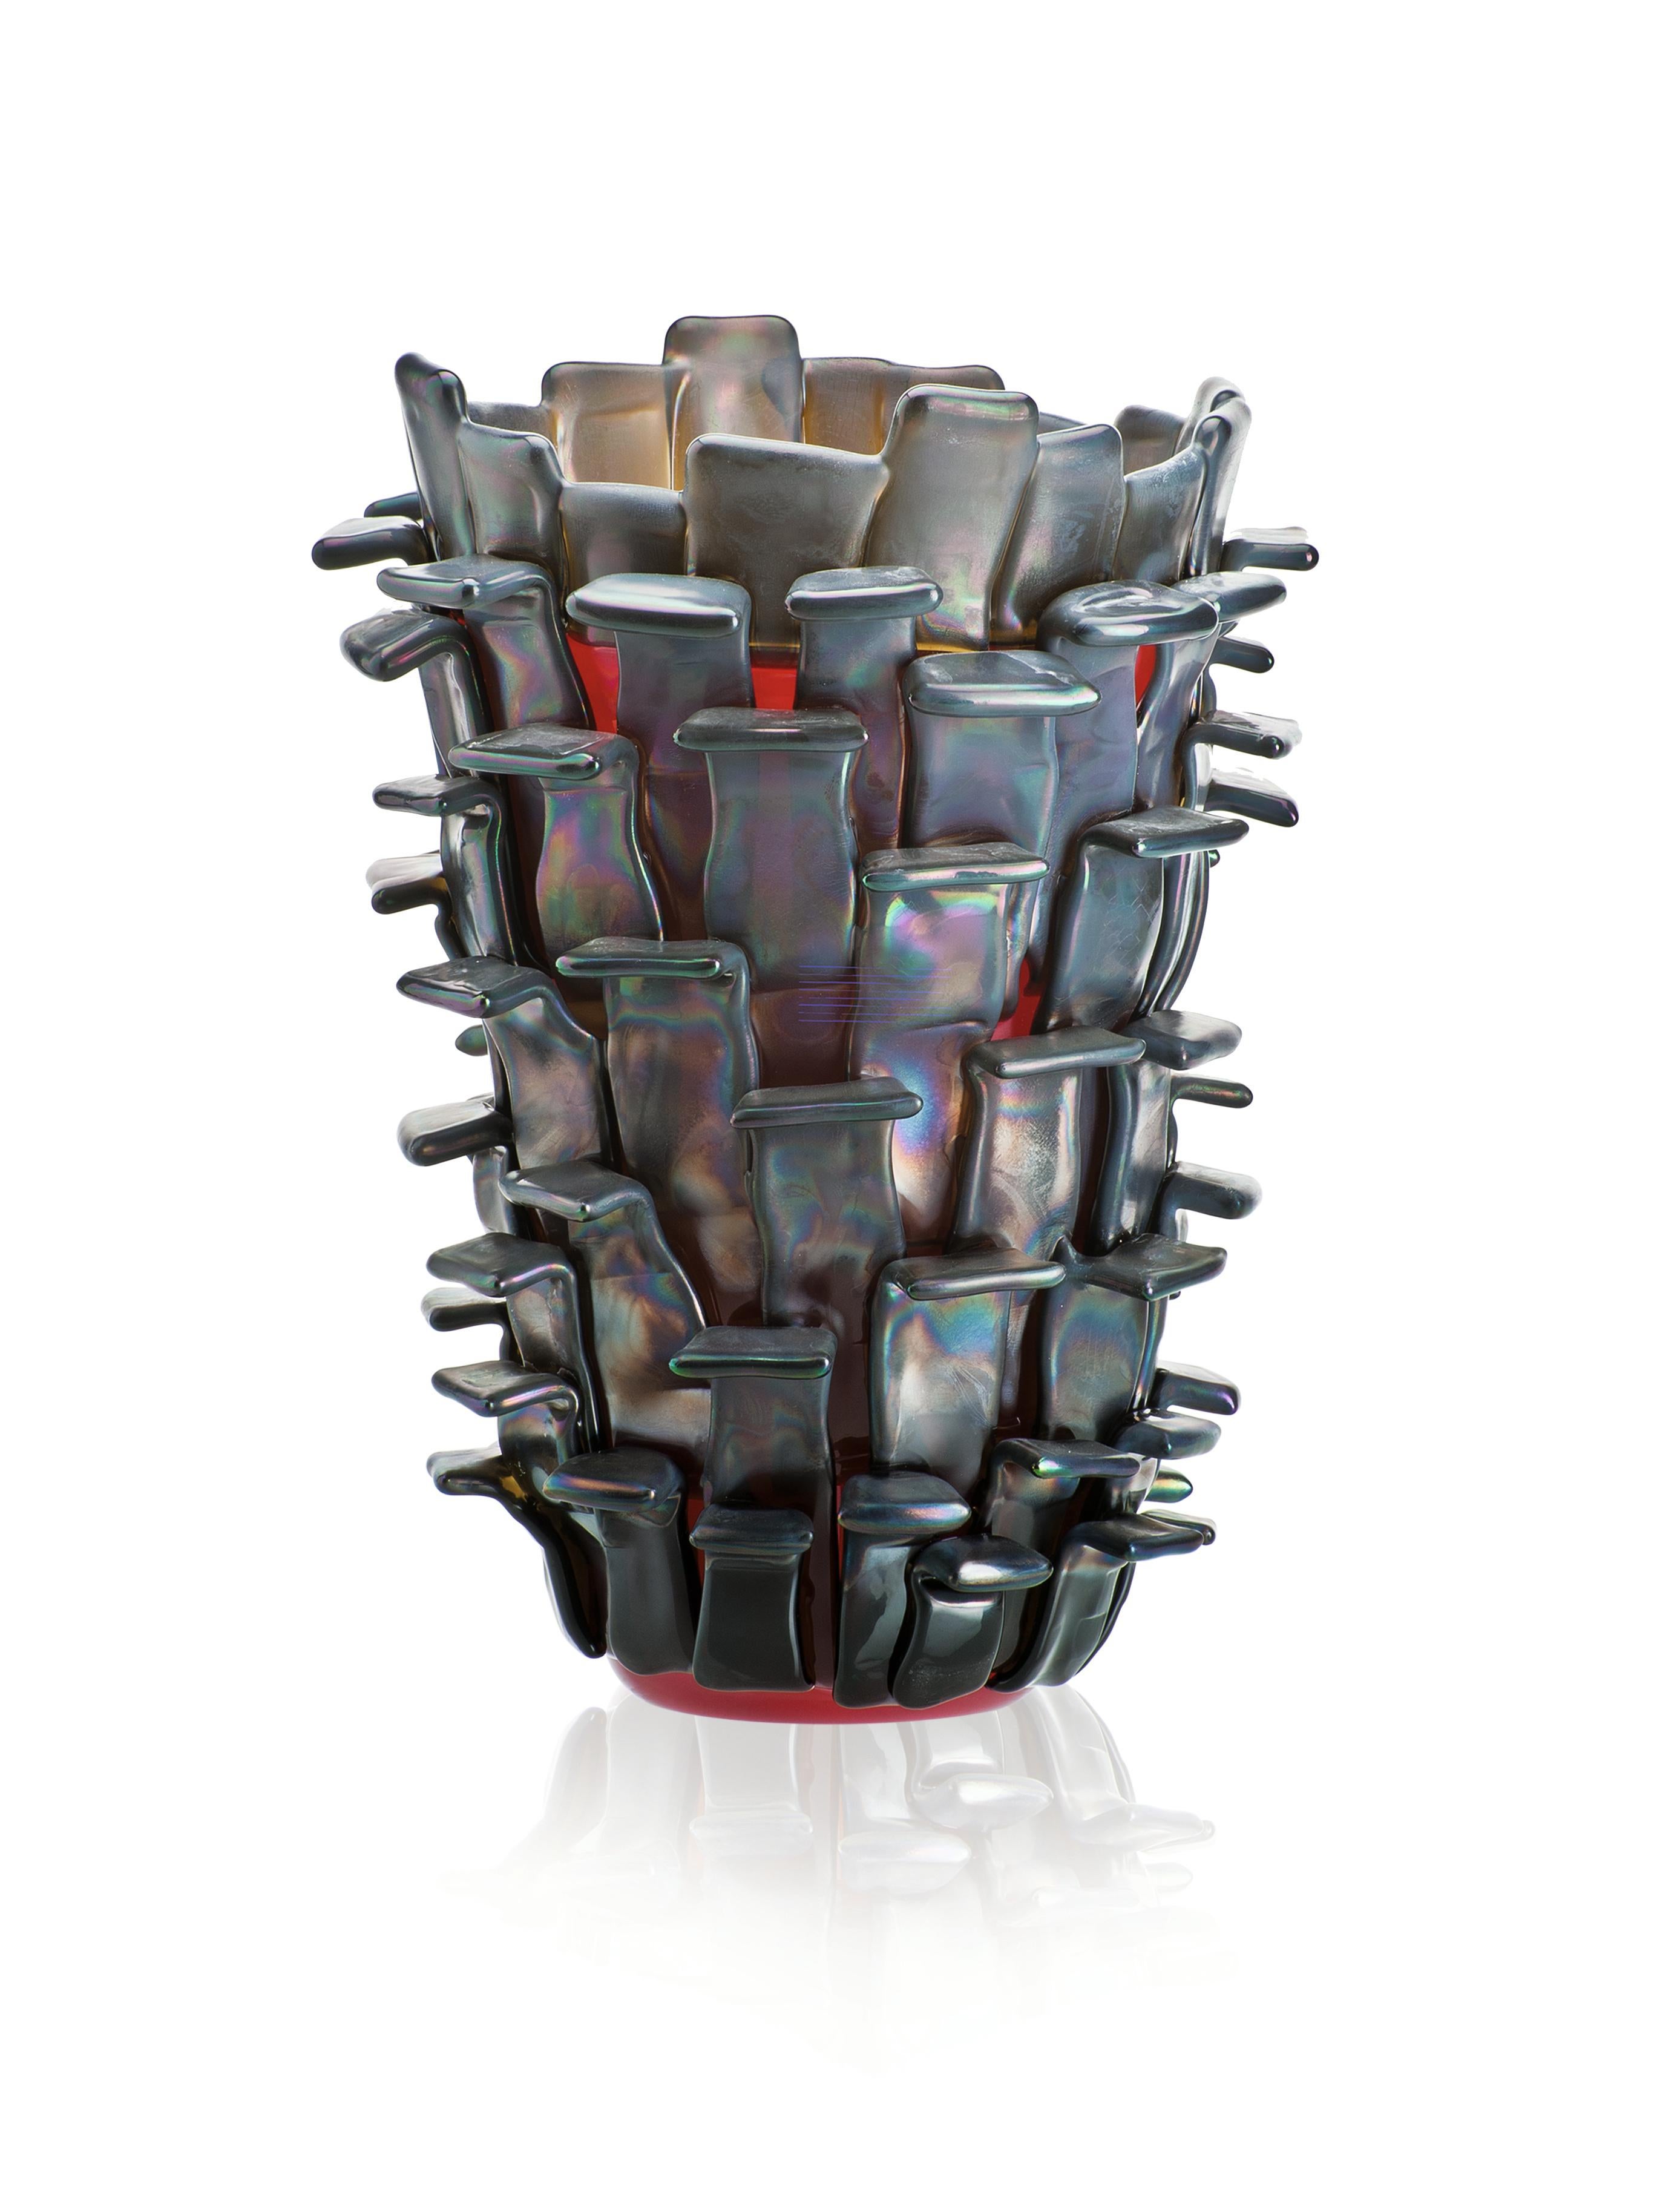 Vase en verre Venini rouge irisé, conçu par Fulvio Bianconi en 1989. Parfait pour la décoration intérieure, comme vase à fleurs ou pièce d'apparat pour n'importe quelle pièce. Édition numérotée pour l'année. 

Dimensions : 22 cm de diamètre x 30